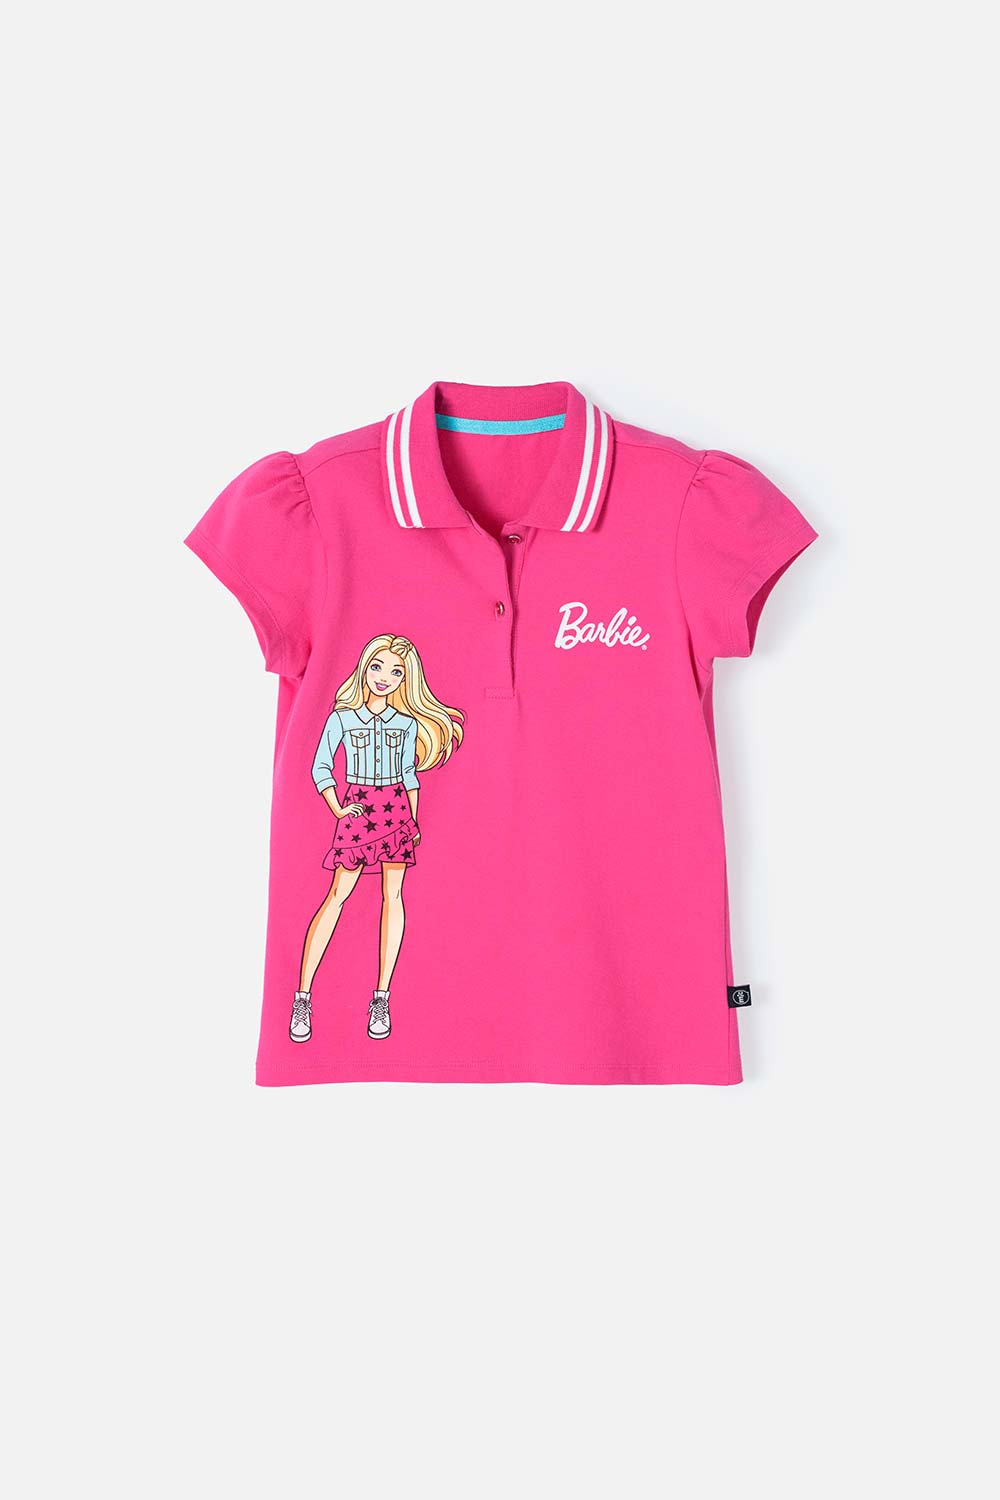 Camiseta de Barbie fucsia tipo polo para niña 4-0